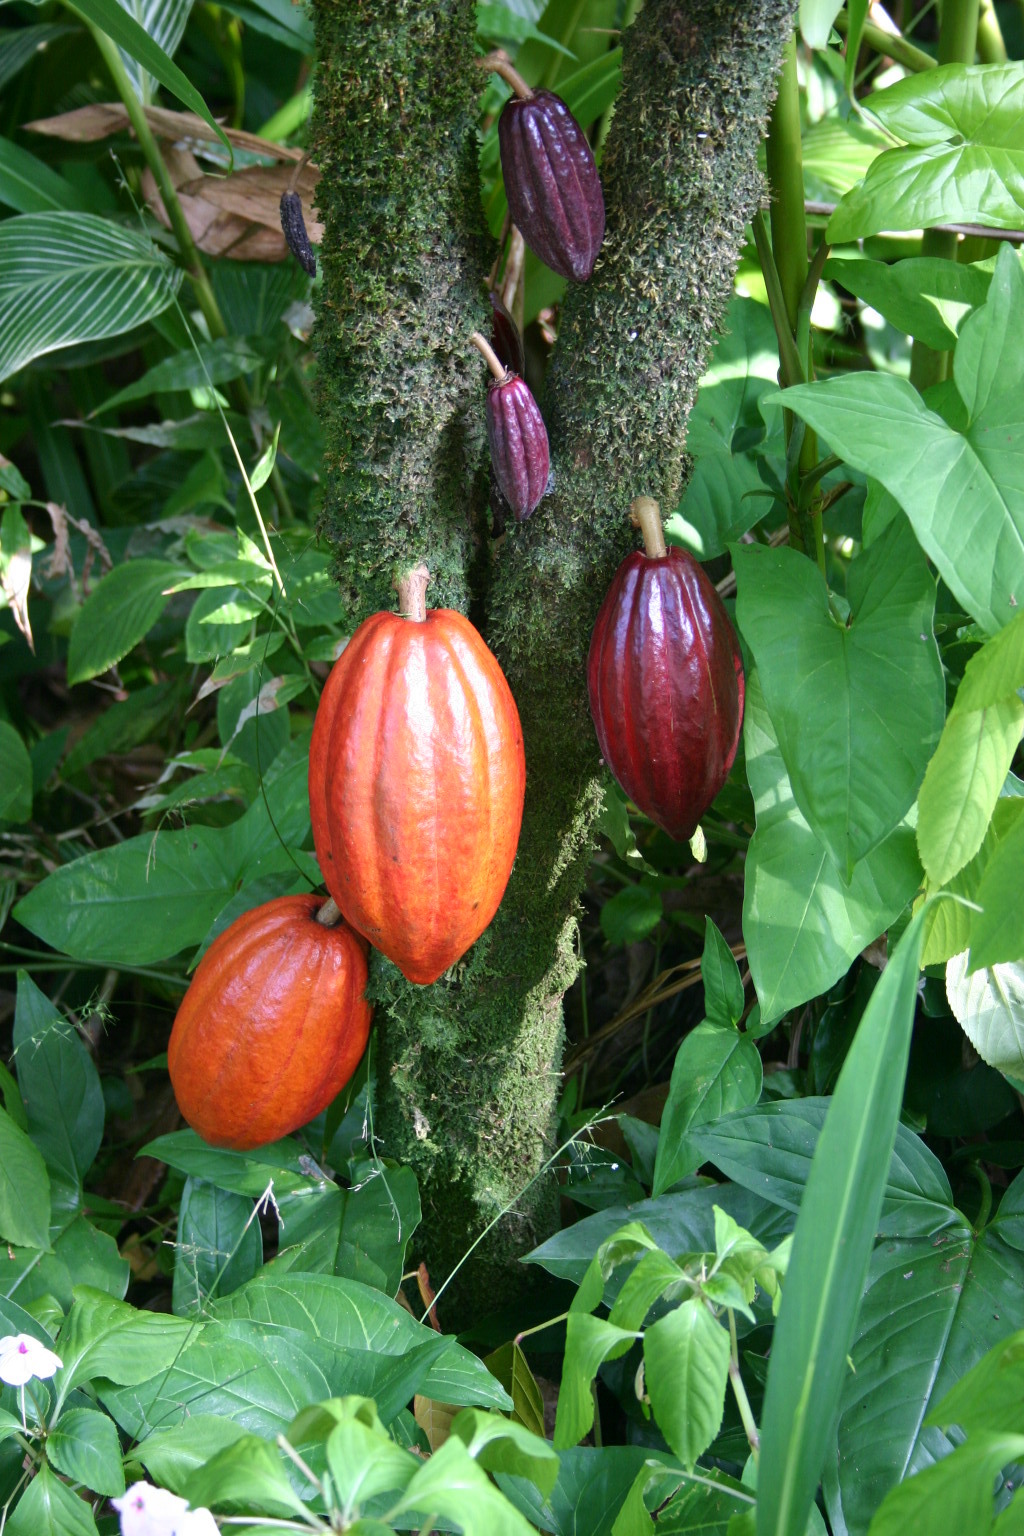 カカオはお金にならない チョコレートを作る技術がなかった農園で始めた栽培 Best Times ベストタイムズ